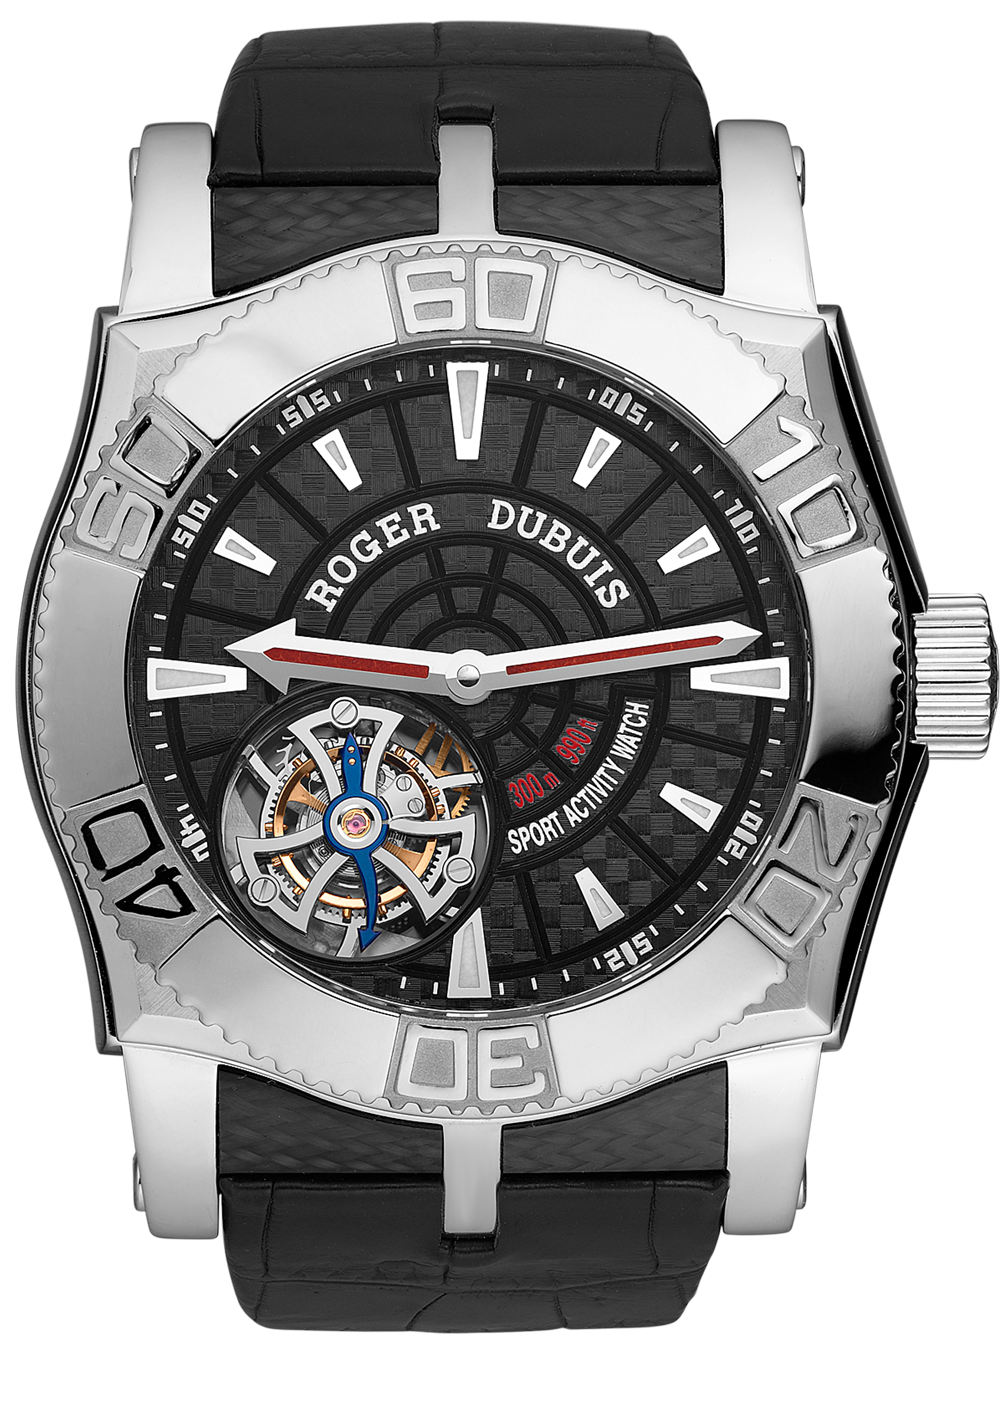 Швейцарские часы Roger Dubuis Easy Diver Tourbillon SE48 029 53(2650) №3